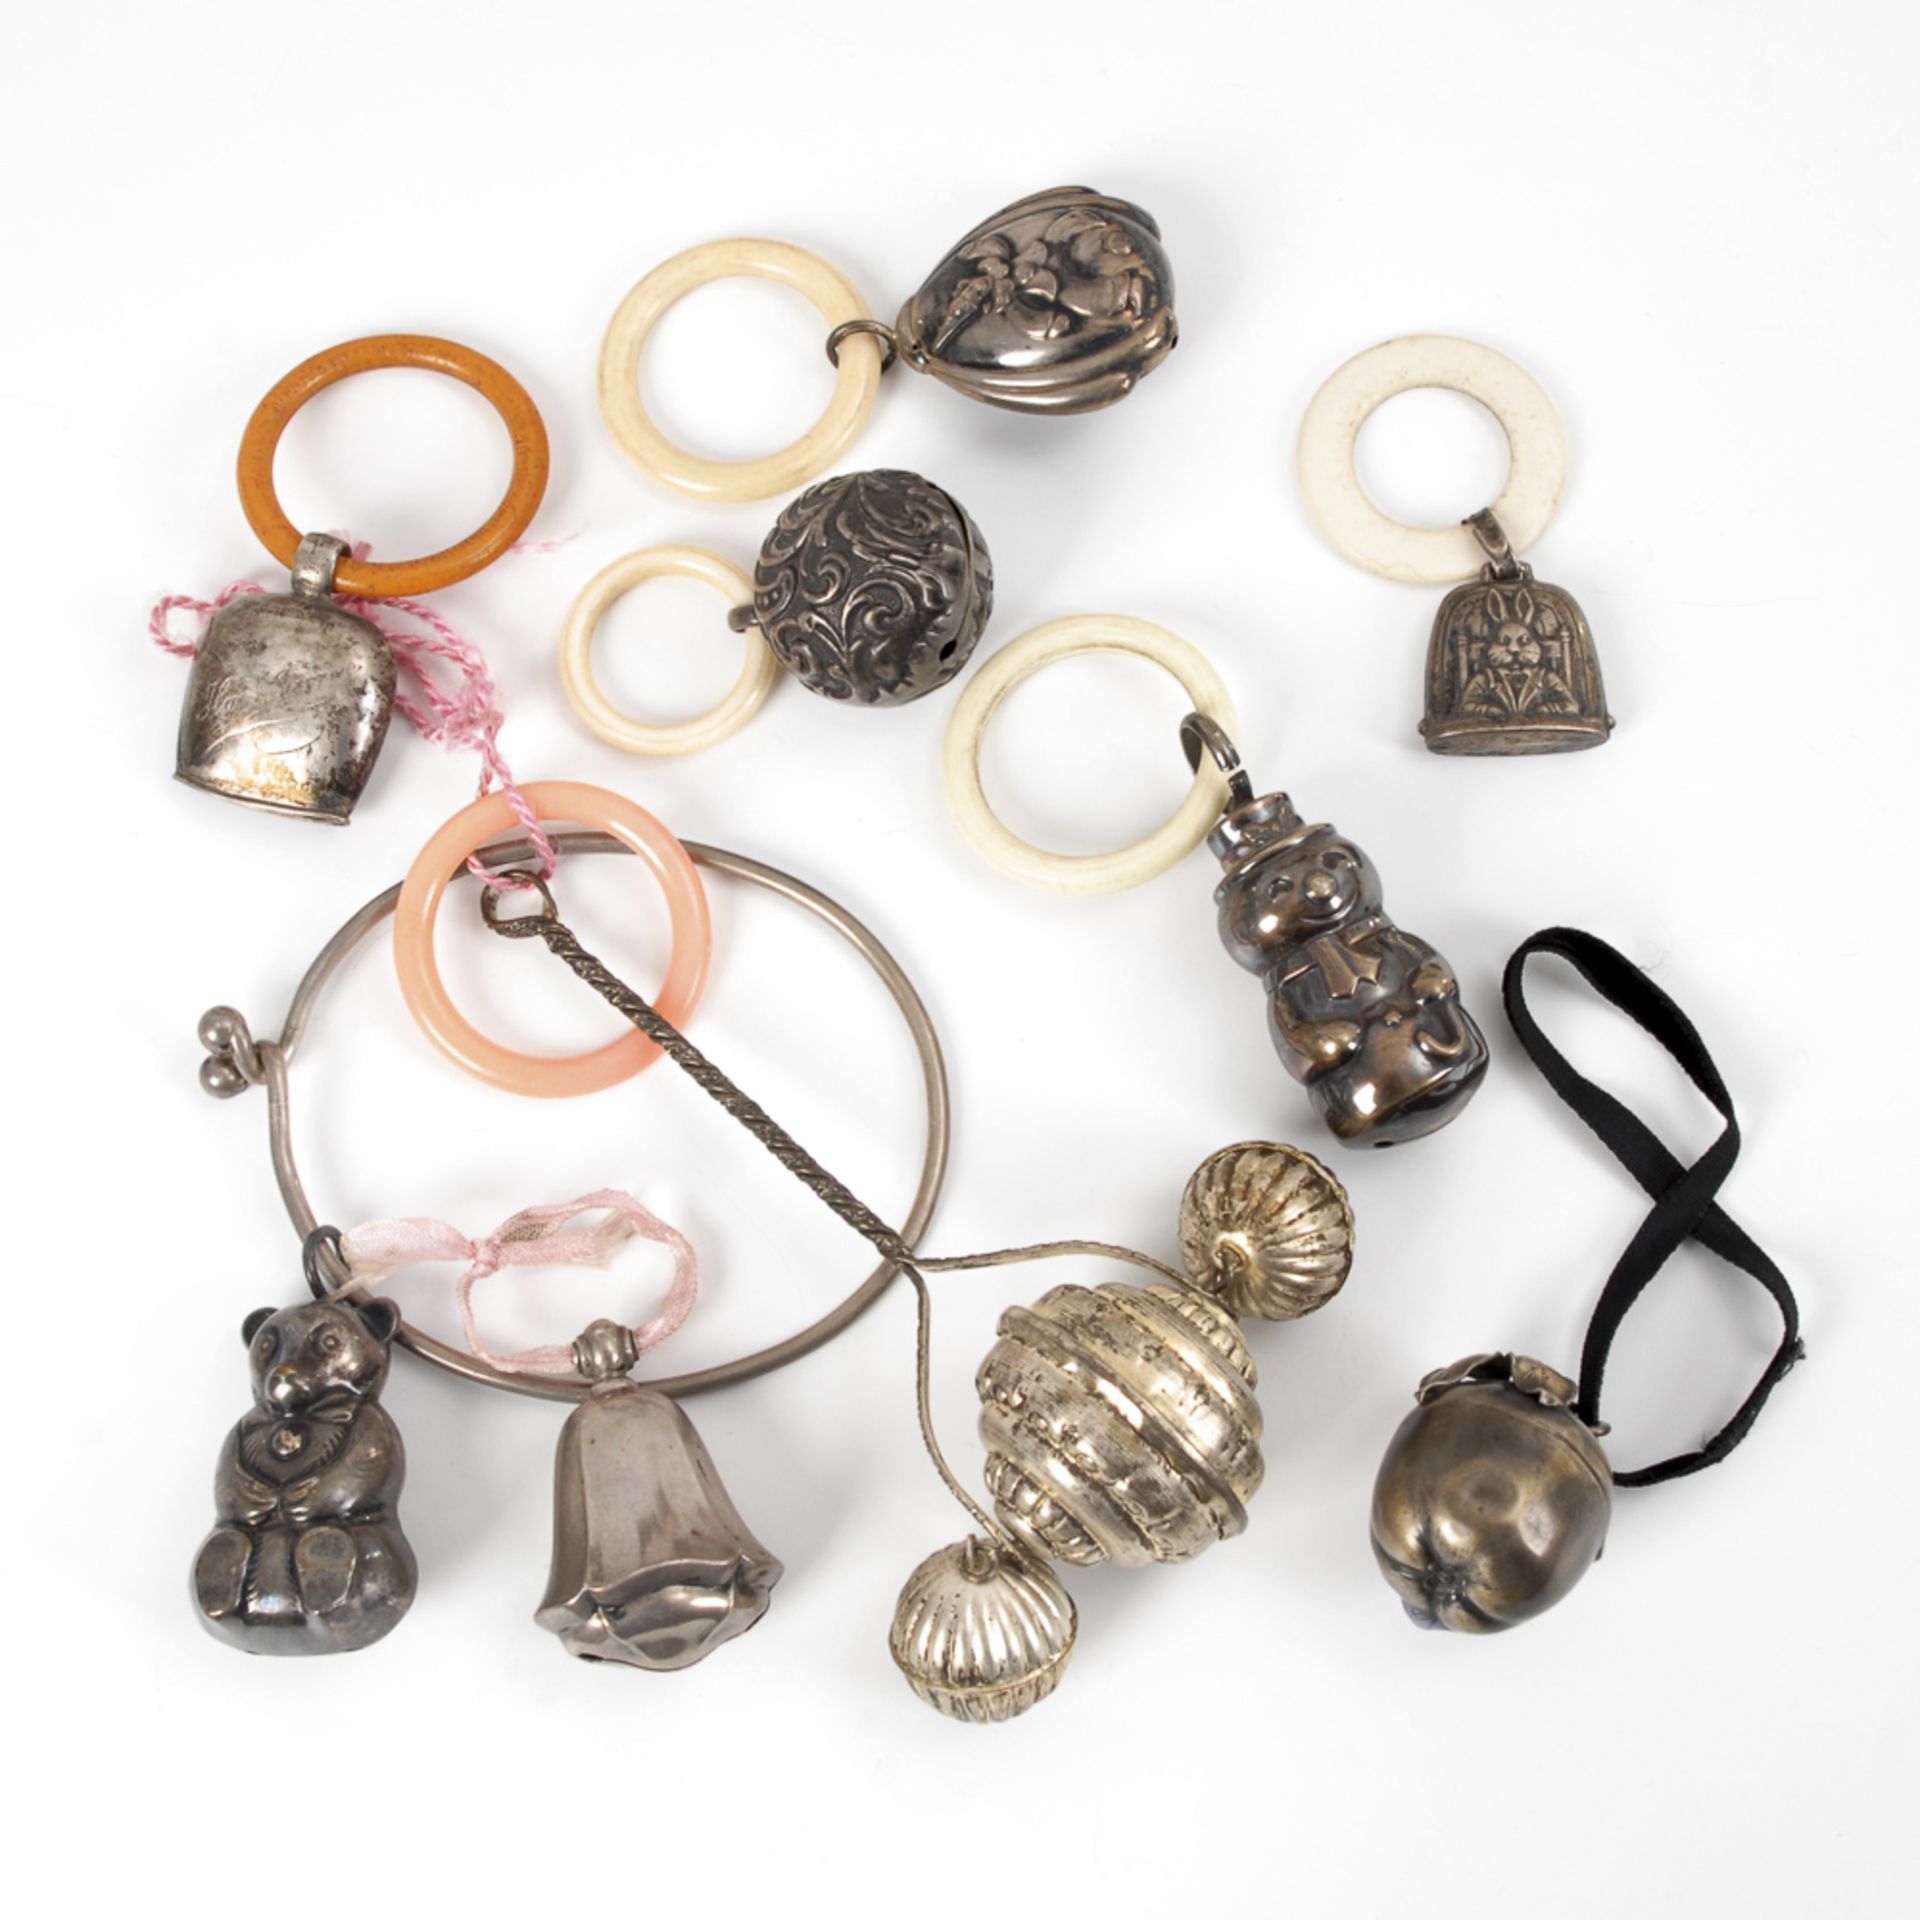 9 Babyrasseln.Um 1900. 4x Silber gepunzt, Ringe teils aus Elfenbein. L 4-16 cm. Verschiedene Formen,